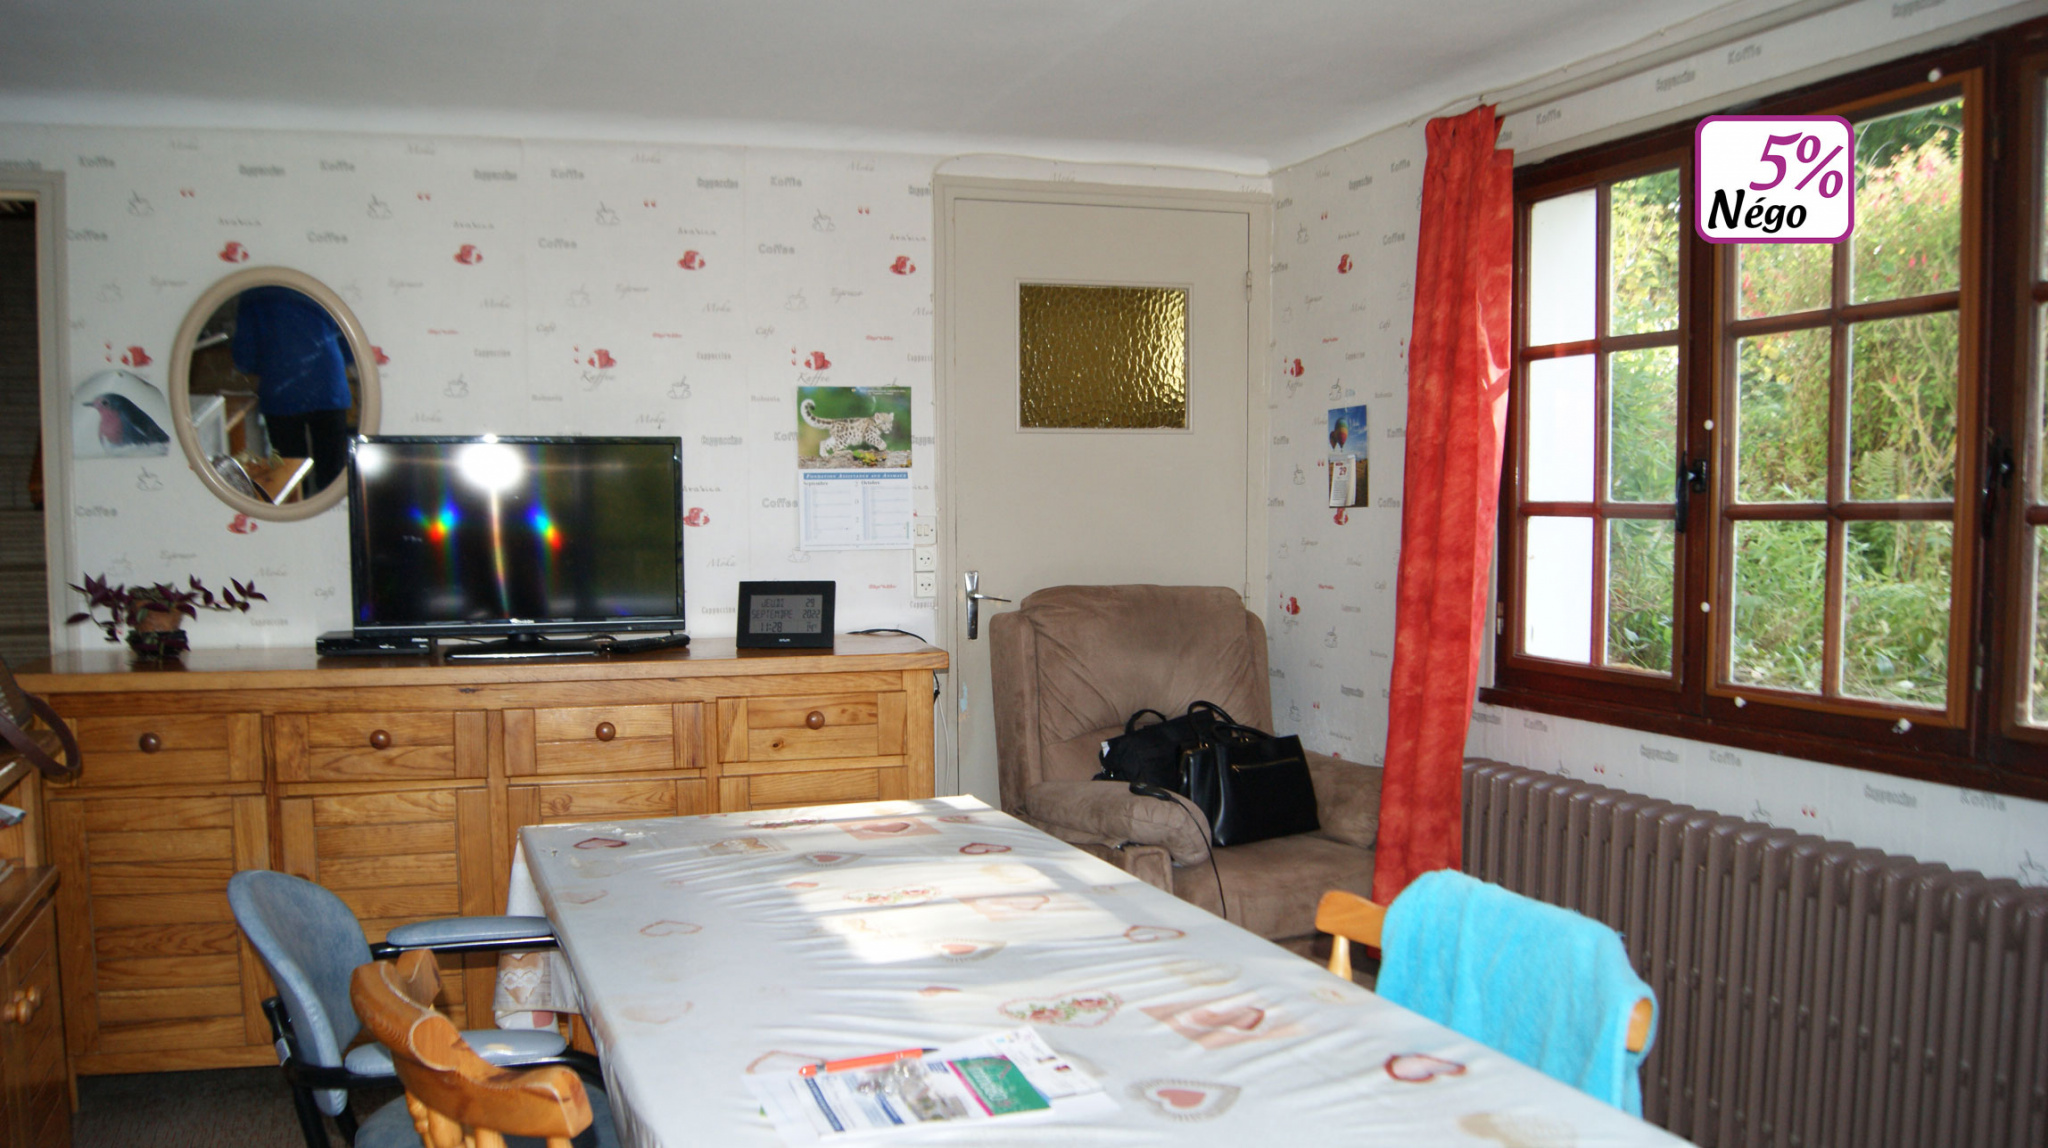 Immo80 – L'immobilier à Amiens et dans la Somme-ACHAT / VENTE Maison 2 chambres avec garage en sous-sol et cour